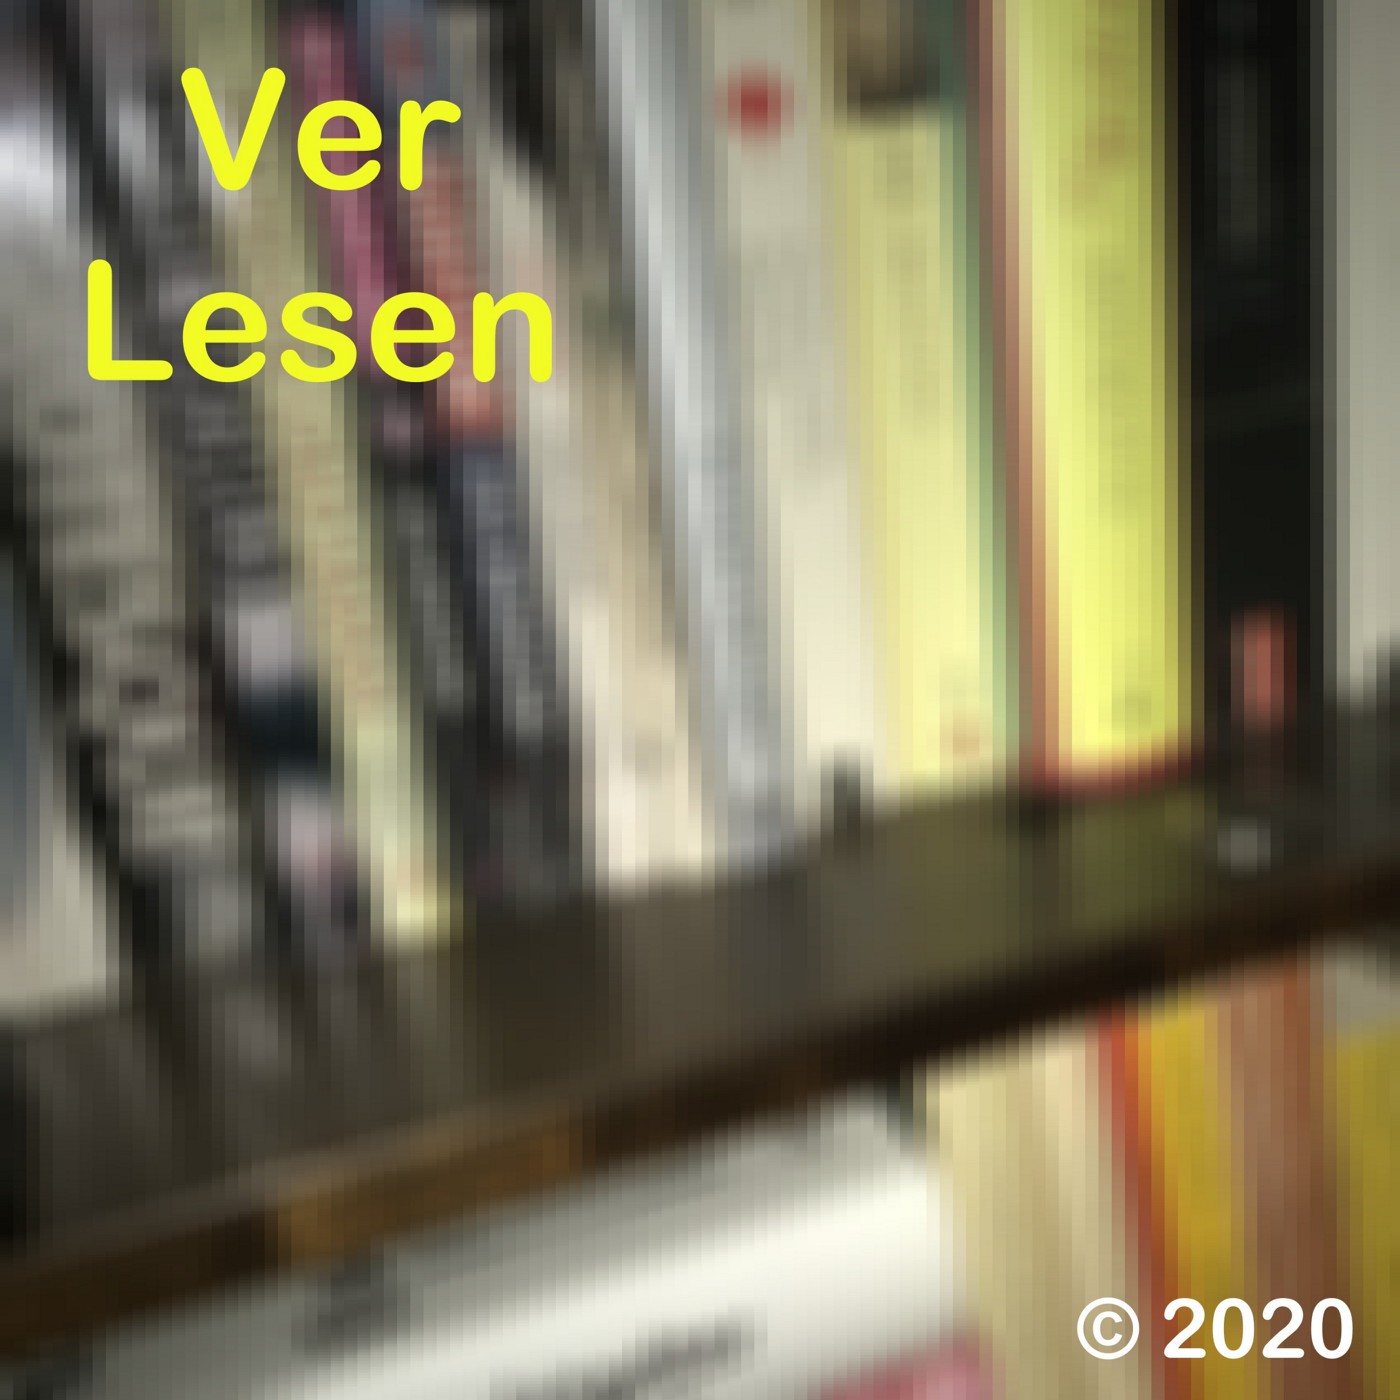 Verpixeltes Bücherregal als Hintergrund mit gelbem Text "Verlesen" als Logo